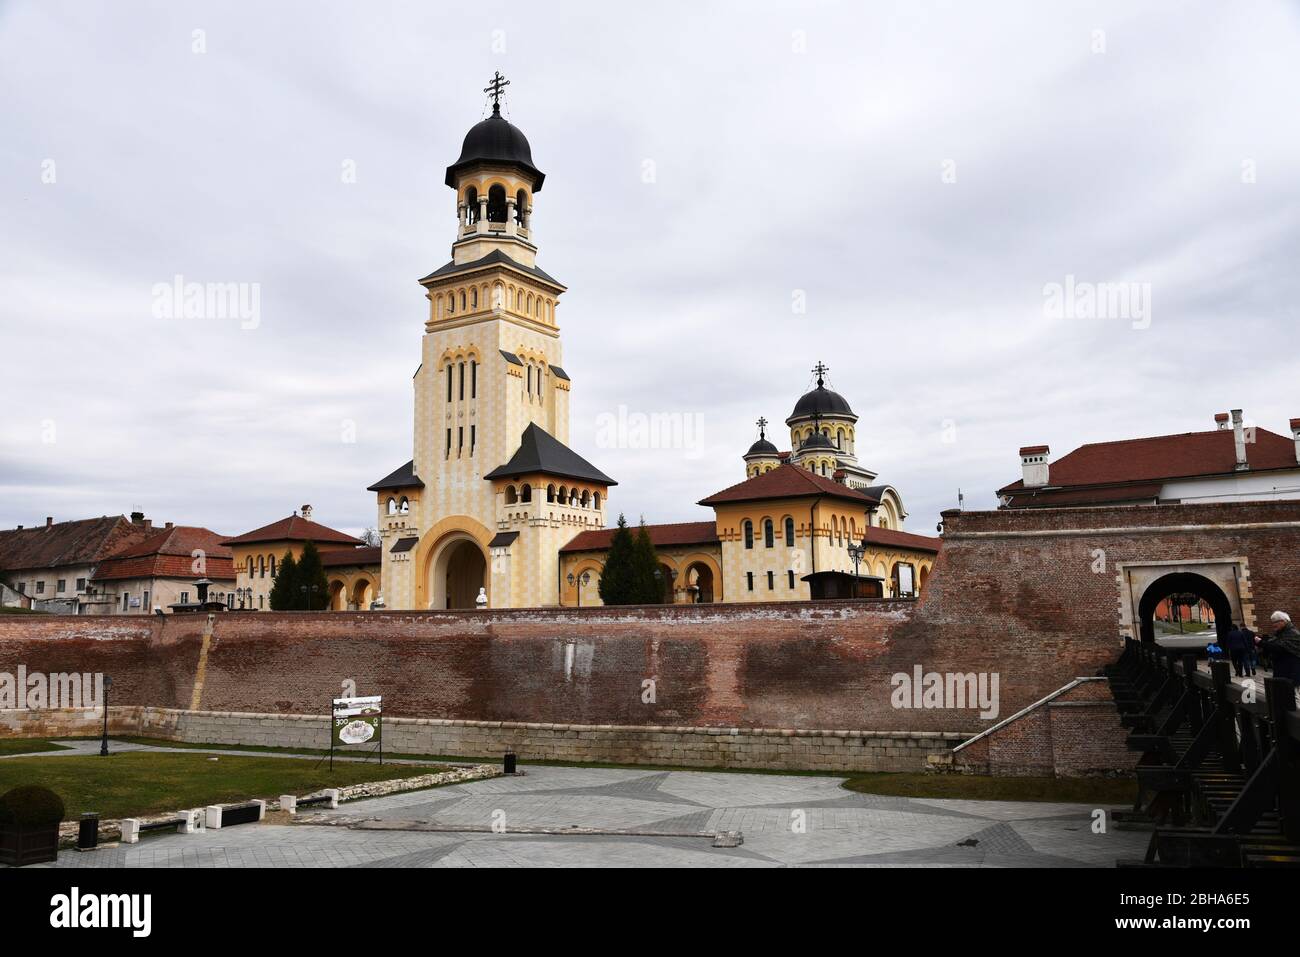 Europe, Romania, Alba Iulia, Karlsburg, Weissenburg, Alba County, Transylvania, Fortress Stock Photo